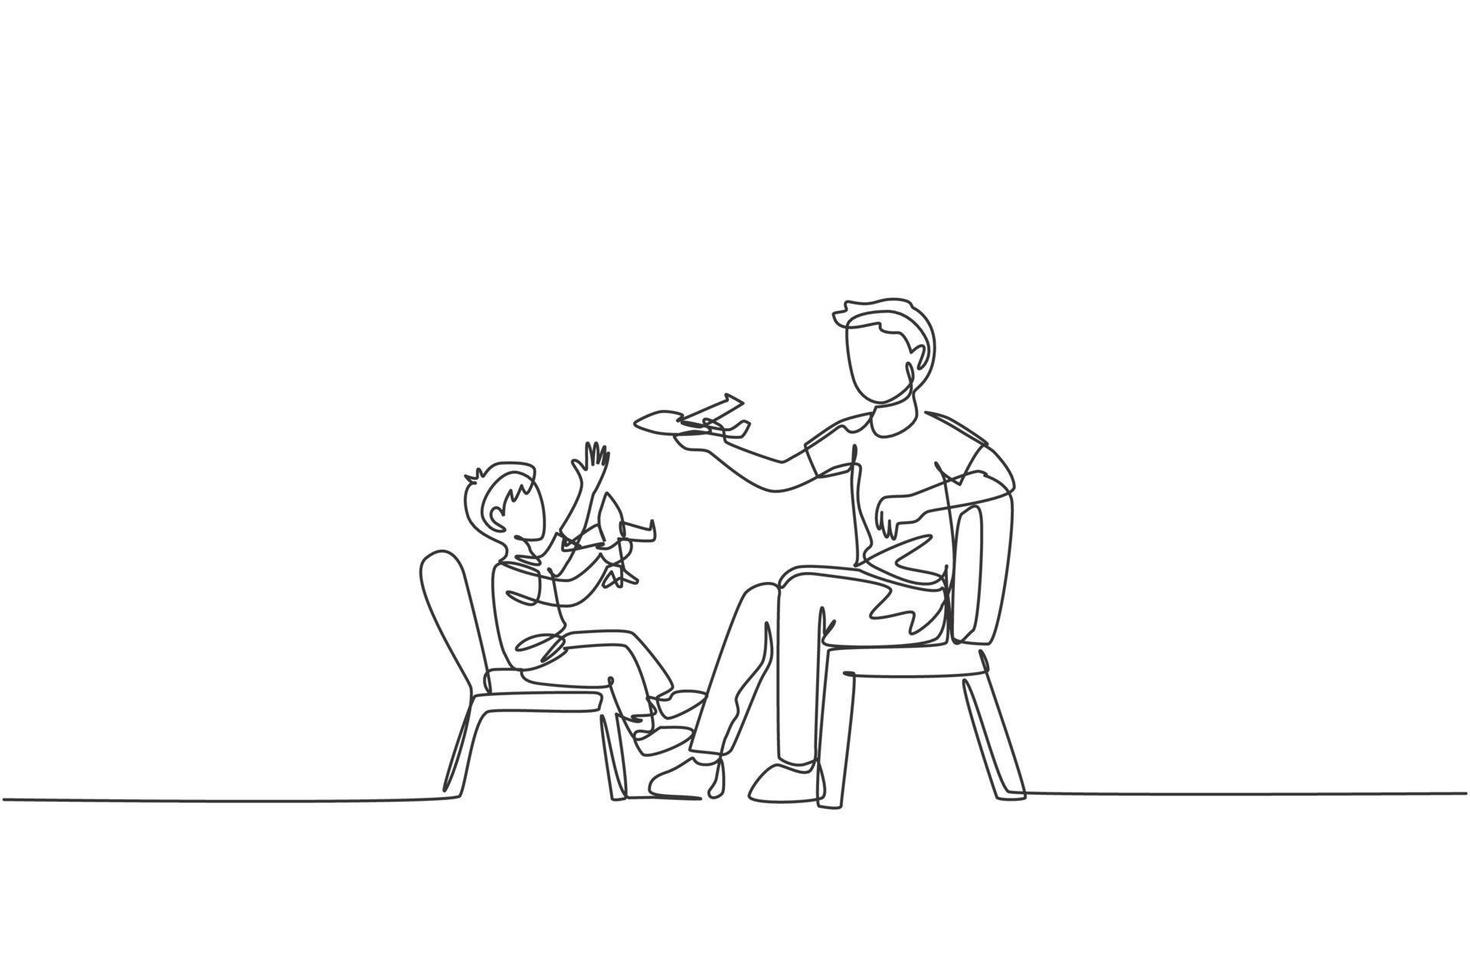 una sola línea dibujando a un papá joven y su hijo sentados en una silla y jugando un avión de juguete juntos en la ilustración gráfica de vector de casa. concepto de vinculación familiar feliz. diseño moderno de dibujo de línea continua